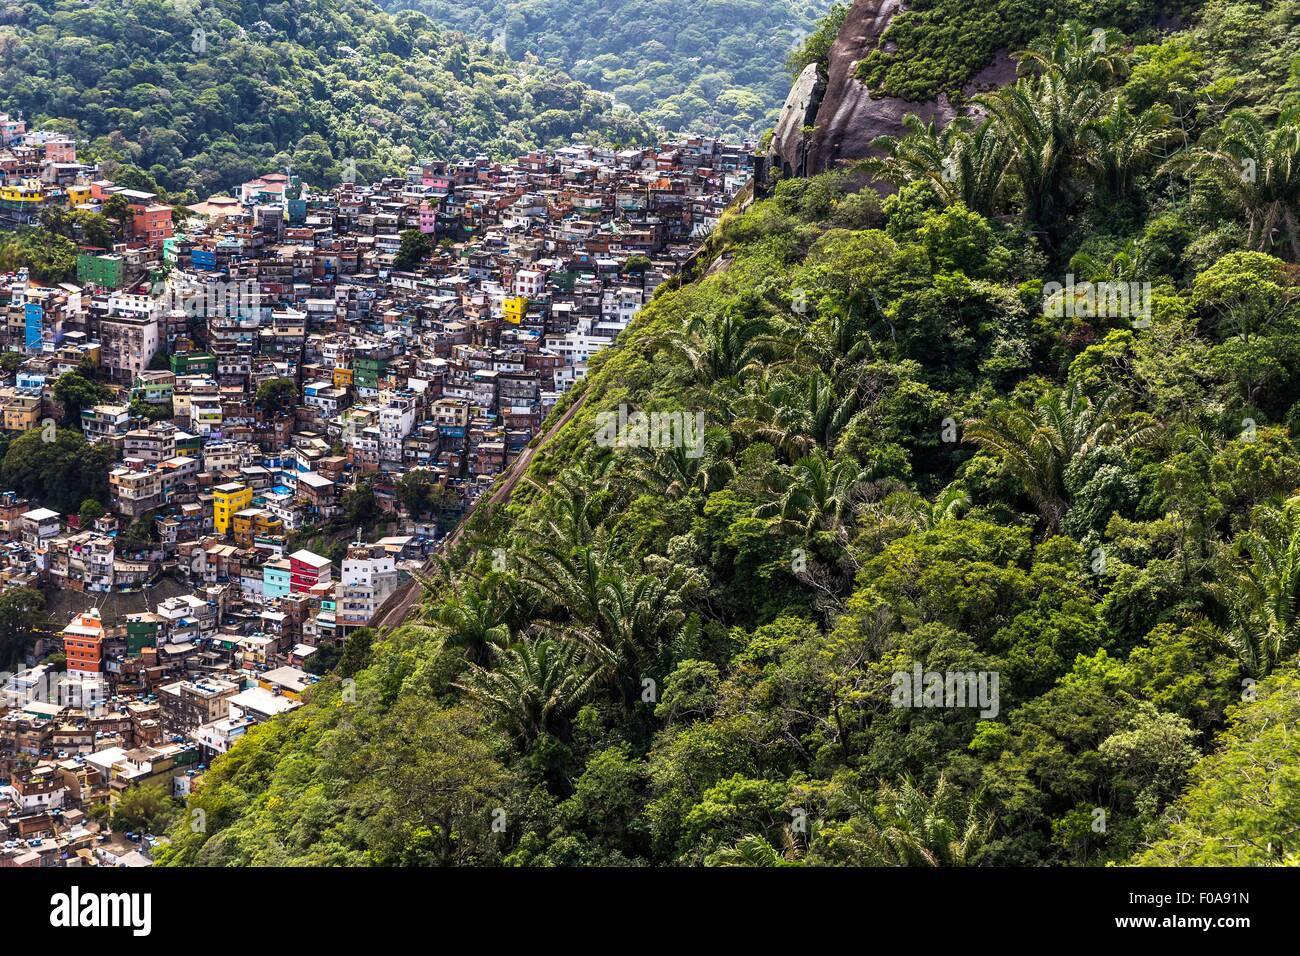 High angle view of Rocinha from Pedra dois Irmaos, Rio de Janeiro, Brazil Stock Photo